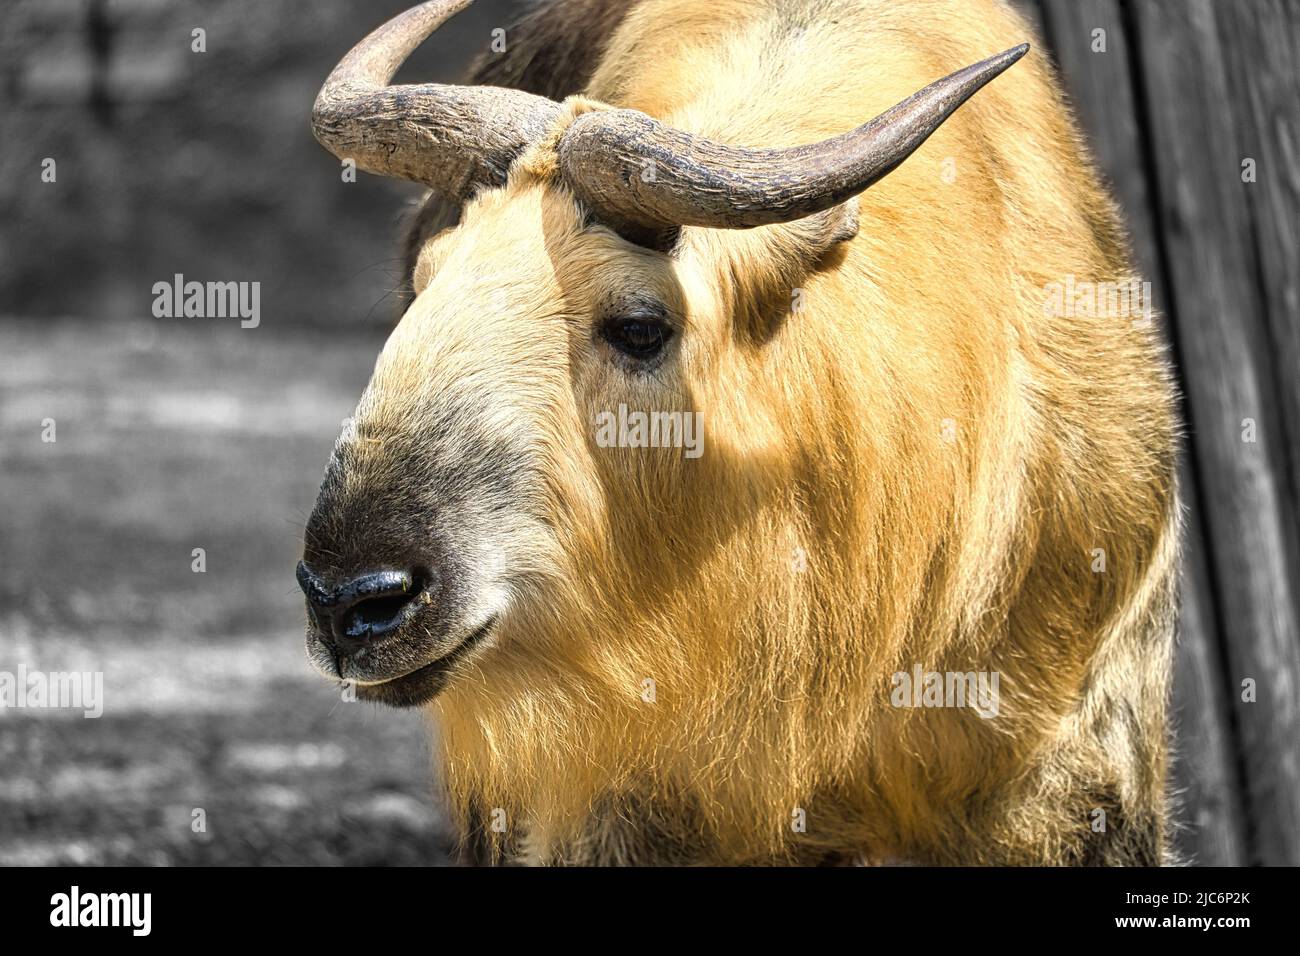 yak d'or (bos mutus) avec une belle fourrure et des cornes. Espèces de bovins de l'Himalaya. Photo d'animal de mammifère Banque D'Images